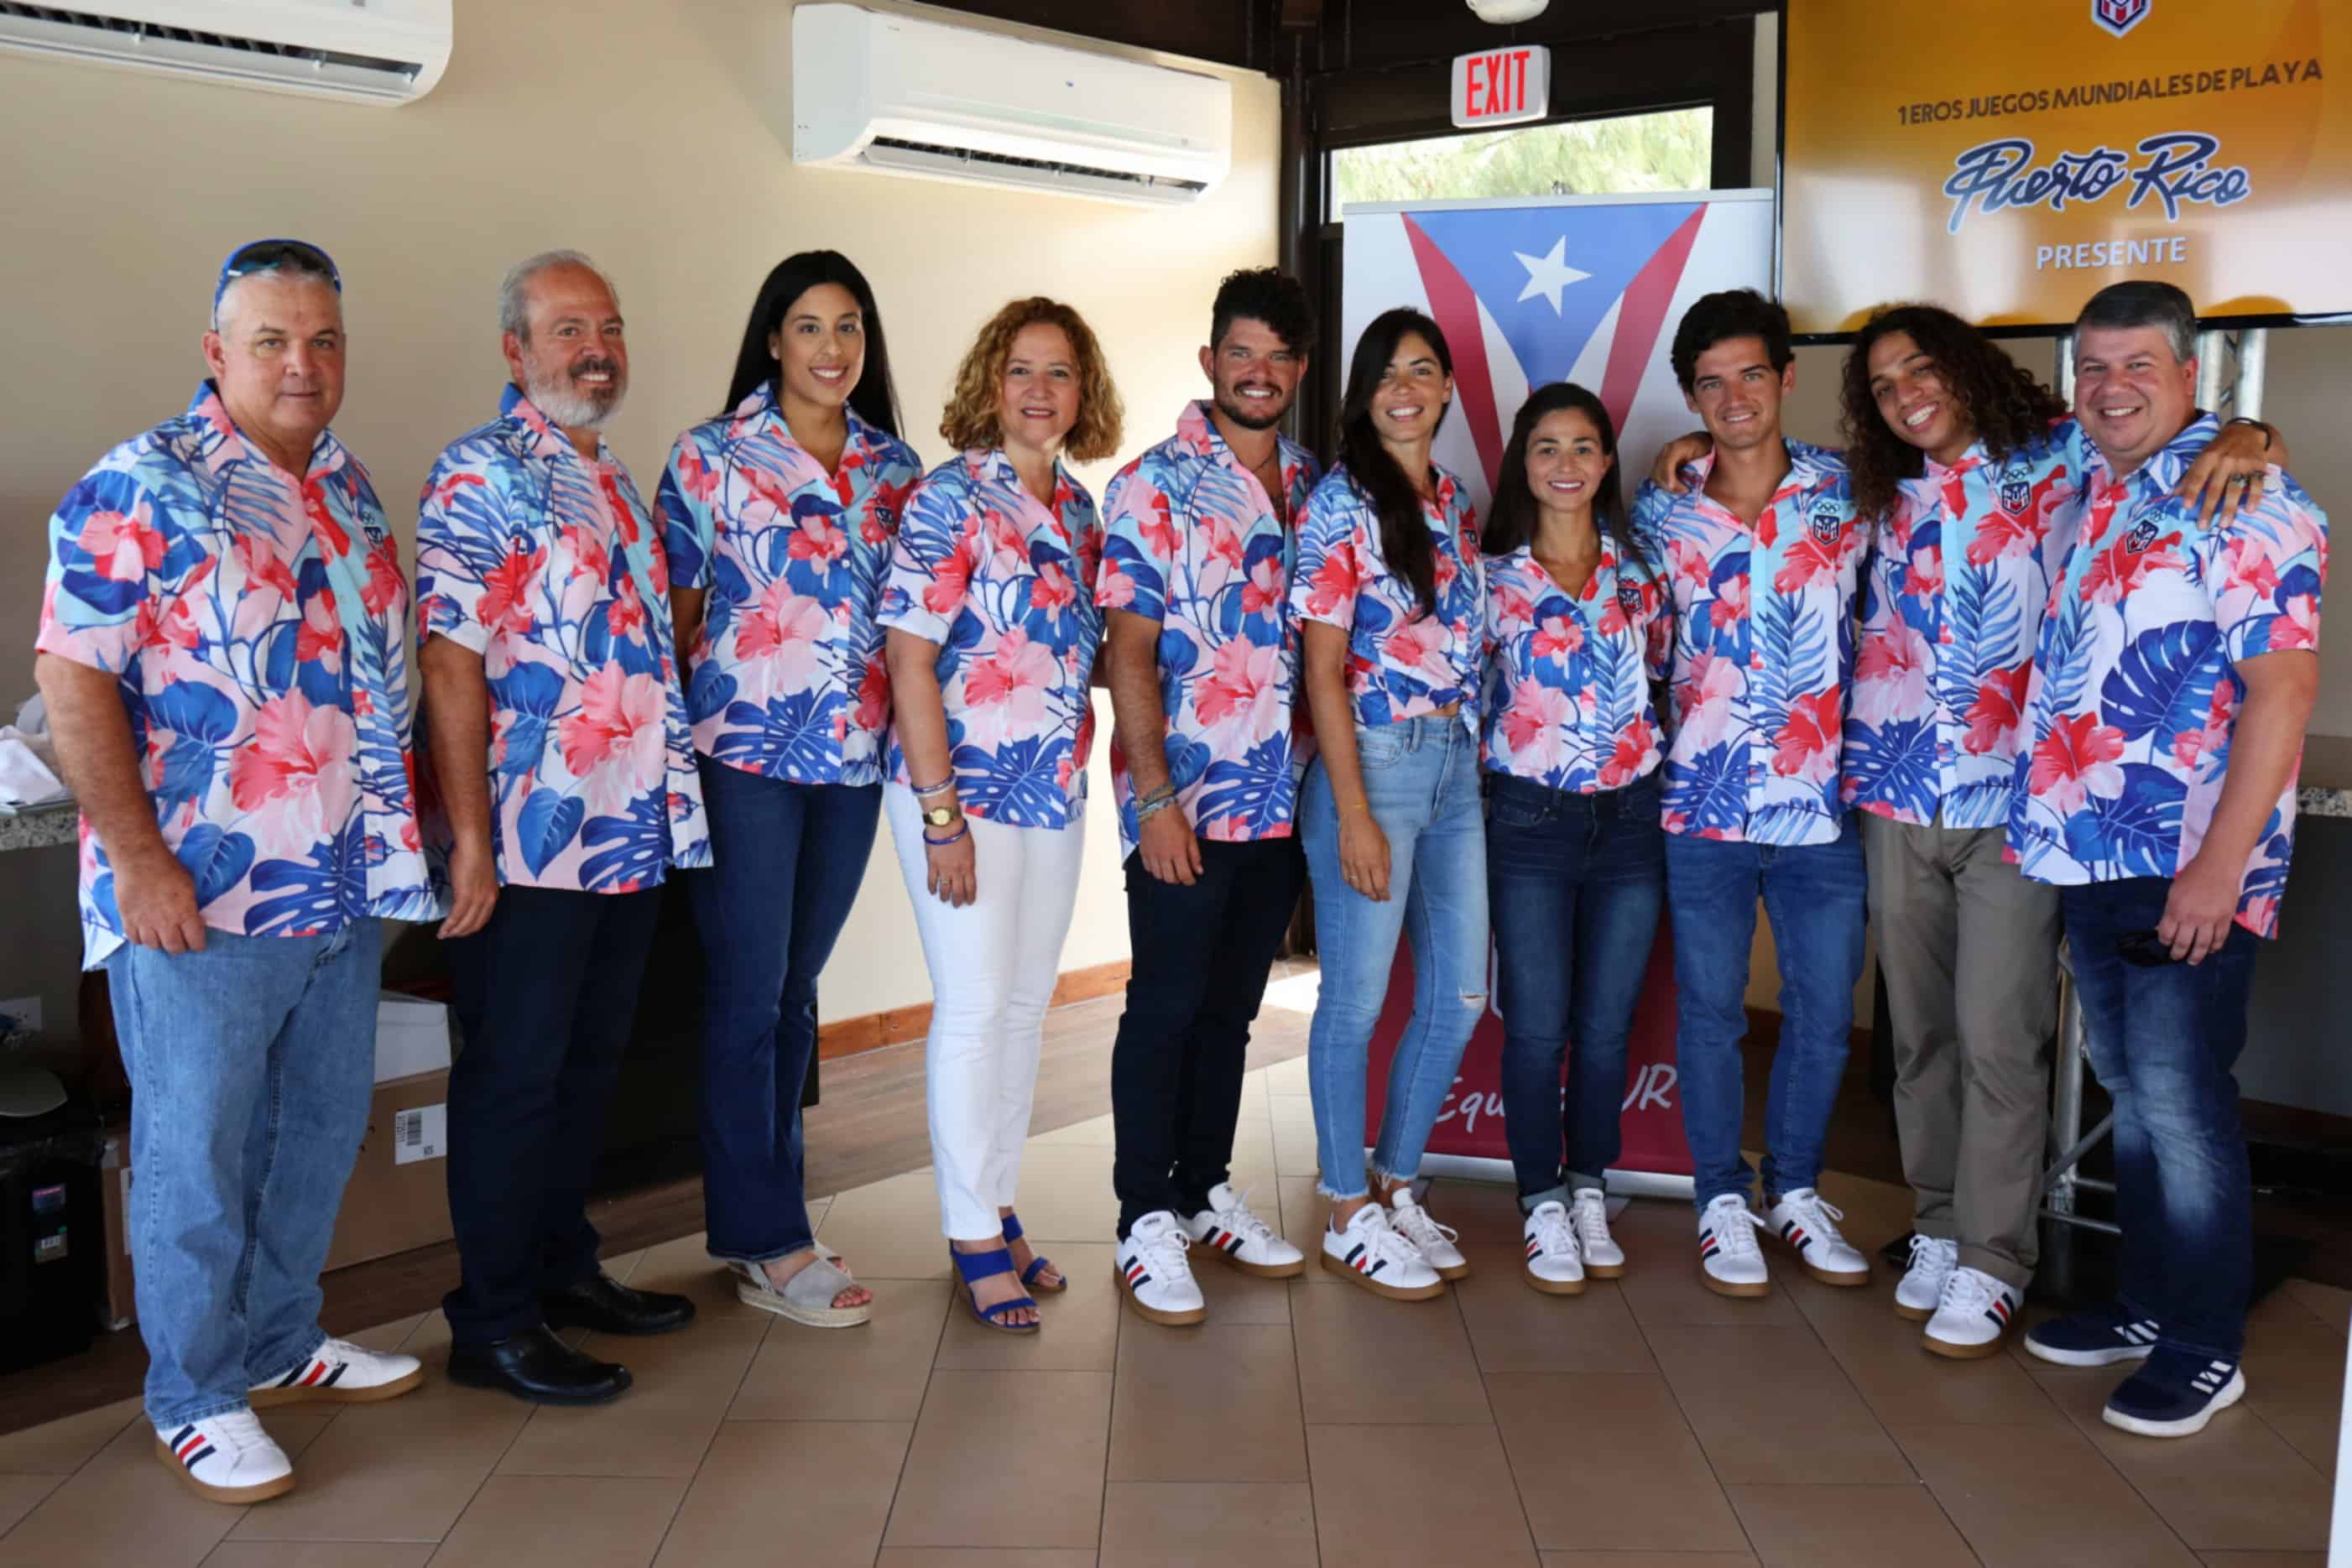 Puerto Rico presente en los Juegos Mundiales de Playa